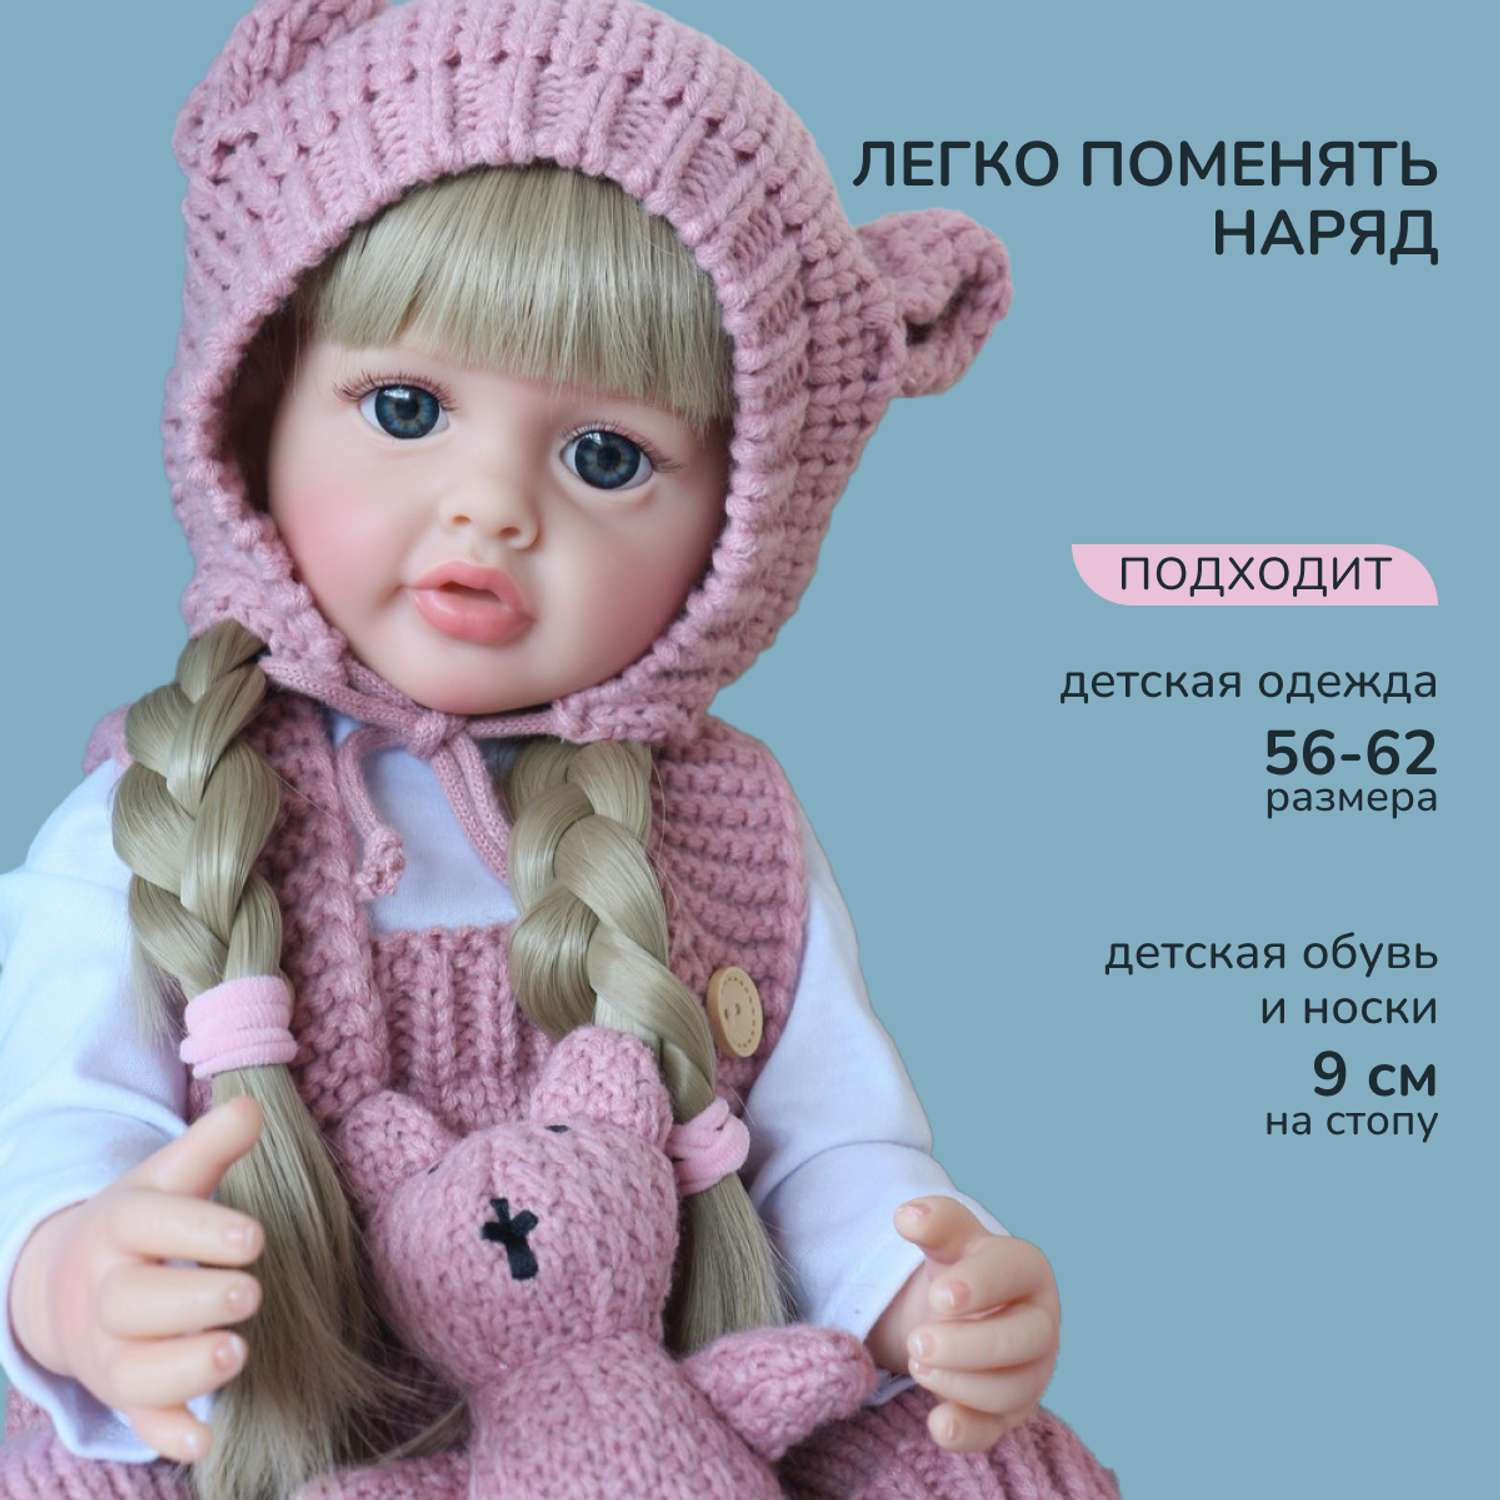 Кукла Реборн QA BABY Александра девочка большая пупс набор игрушки для девочки 55 см 5510 - фото 6